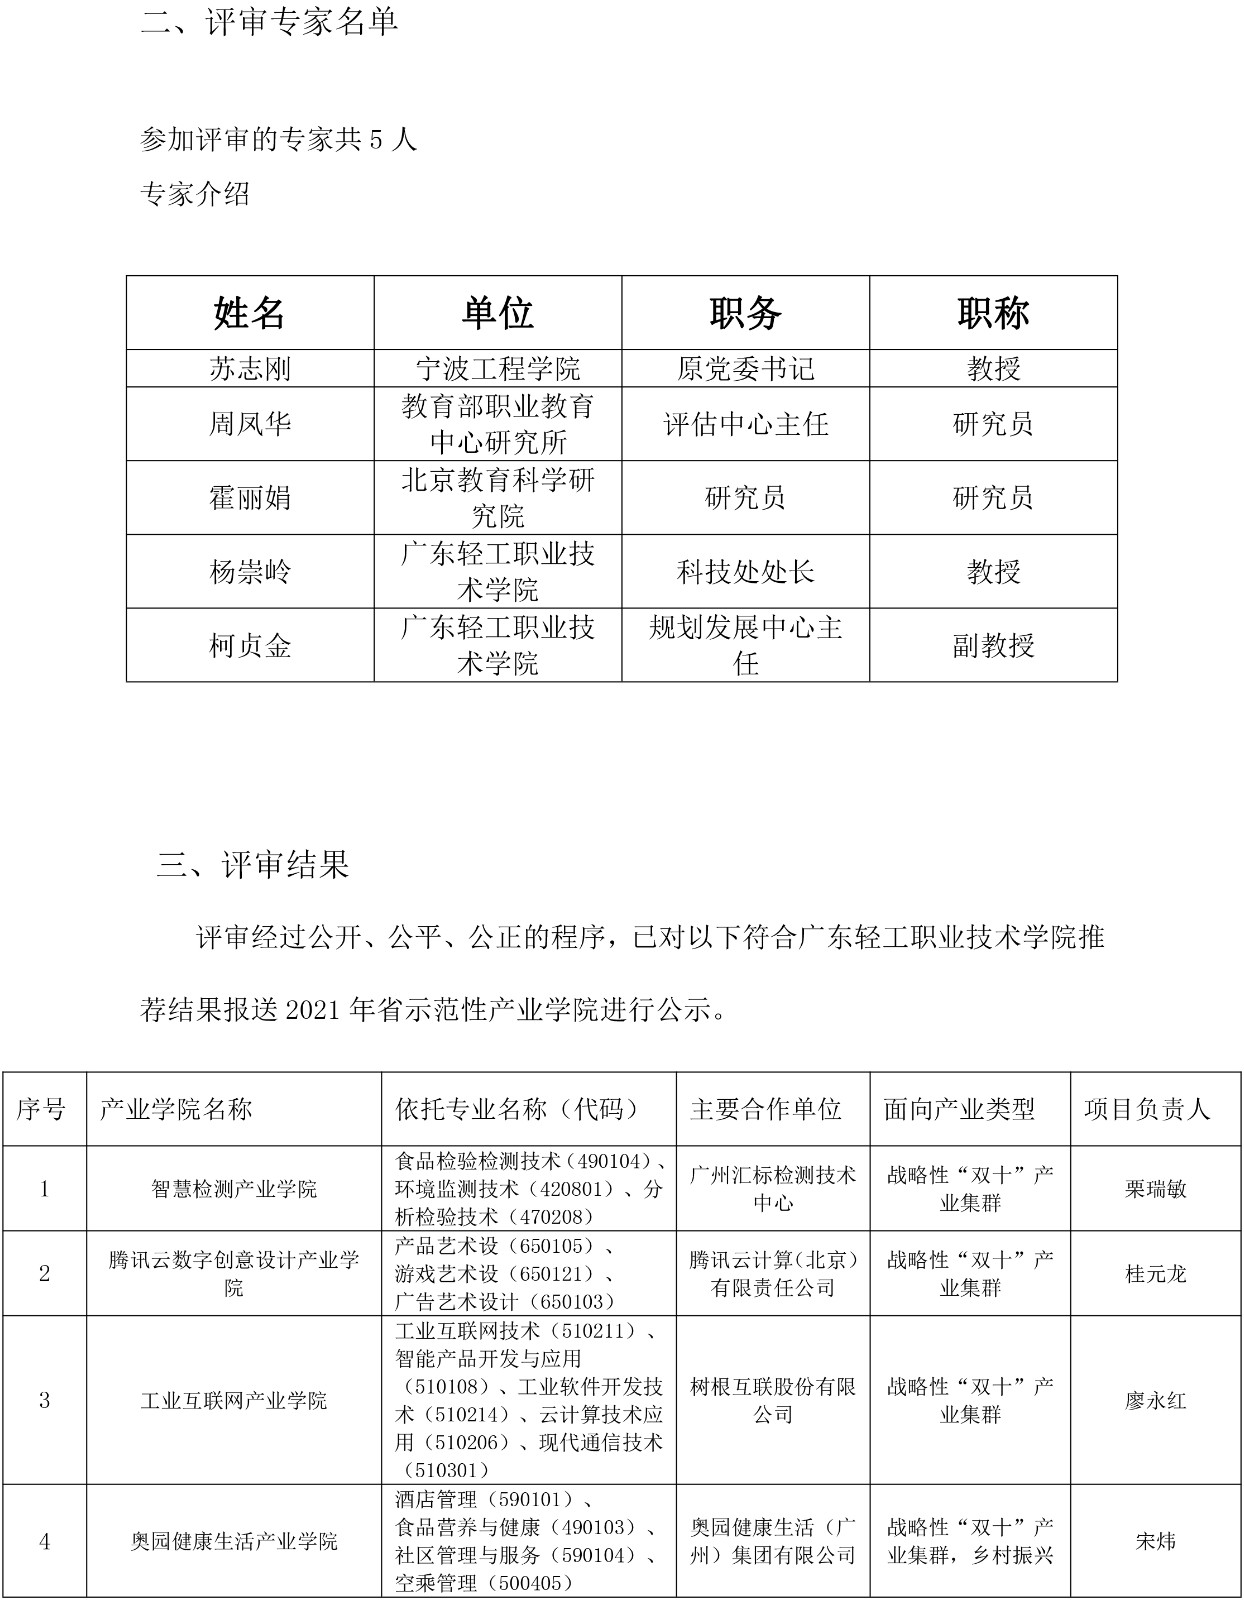 广东轻工职业技术学院2021年省高职教育示范性产业学院项目遴选工作报告-2.jpg